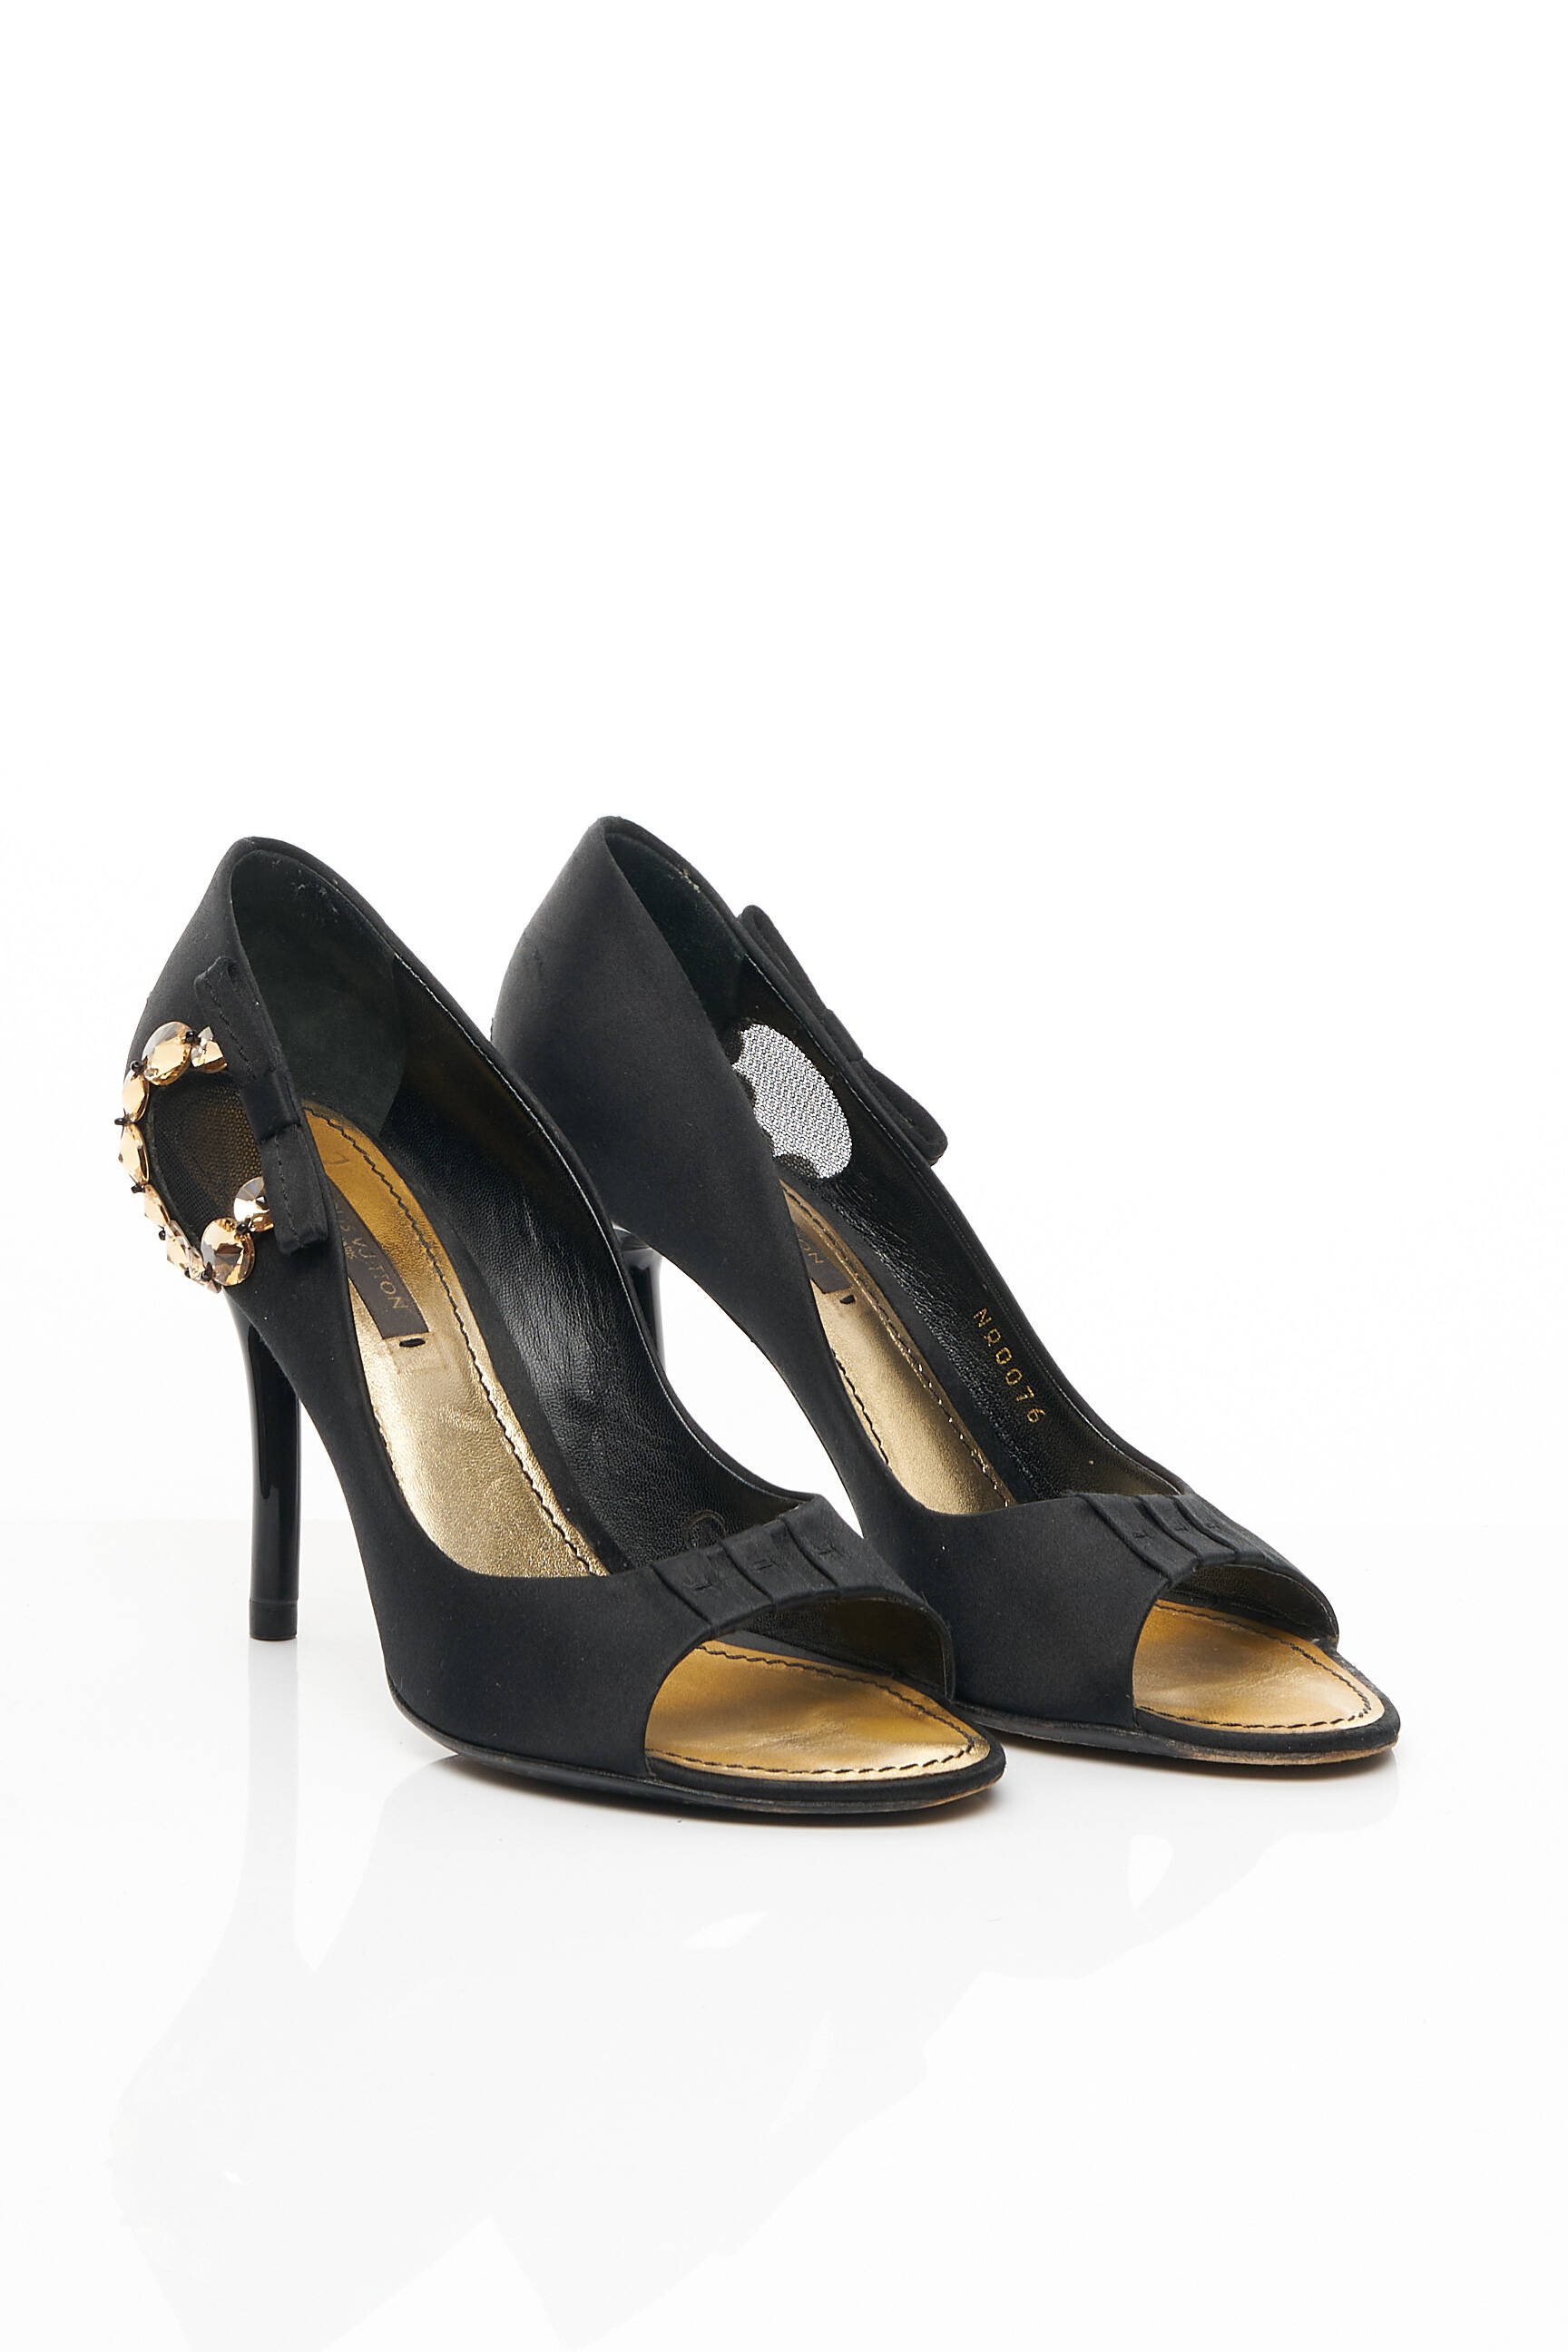 Chaussures Bottines Louis Vuitton Noir d'occasion